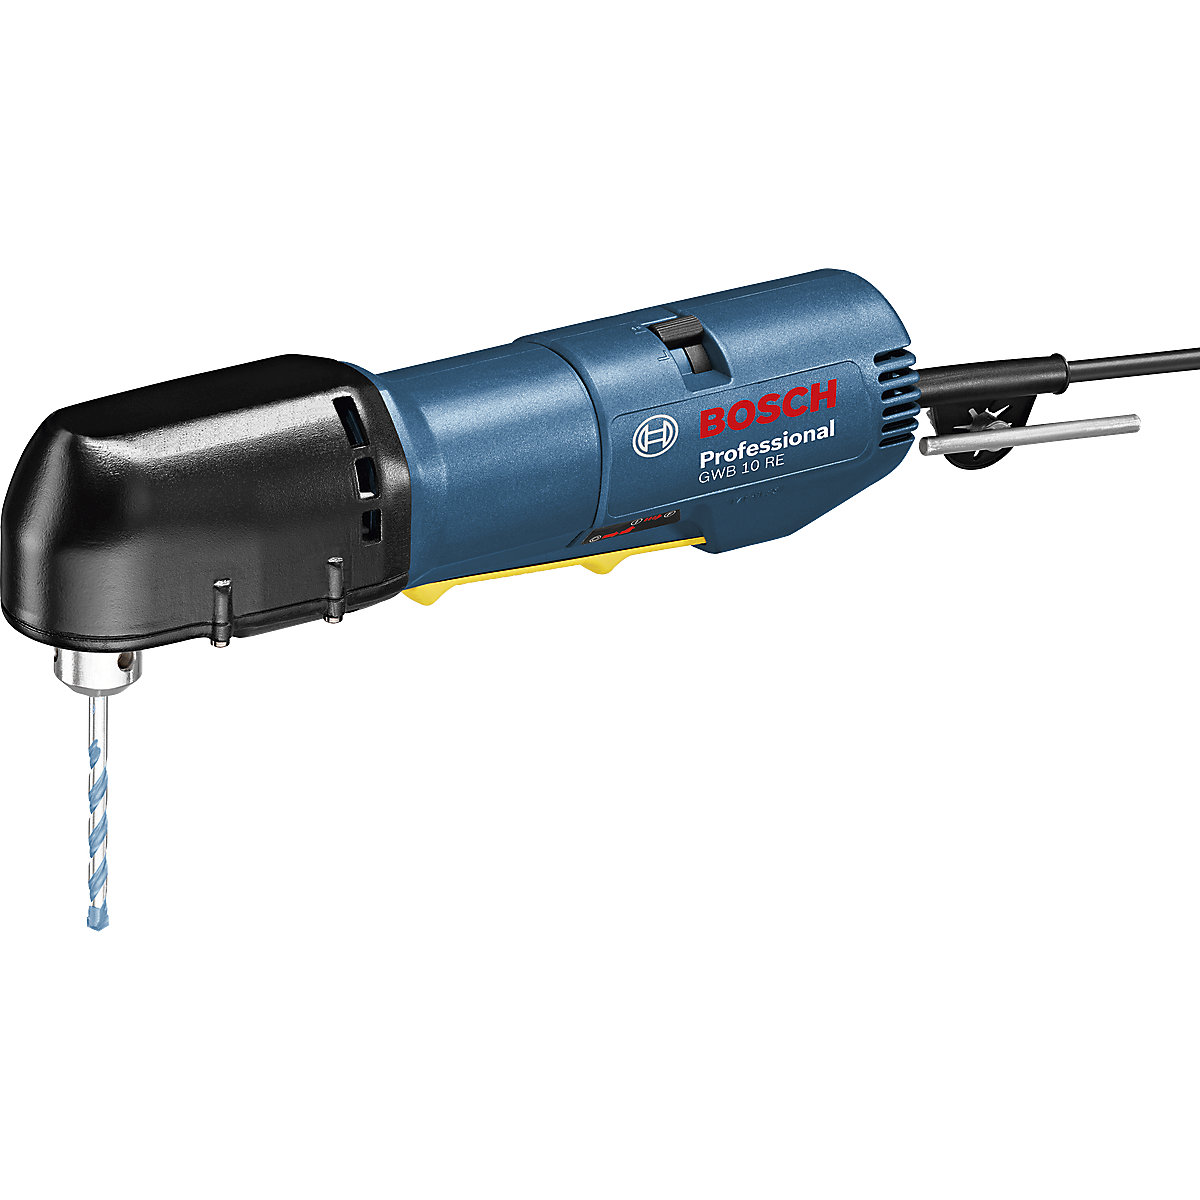 Taladradora angular GWB 10 RE Professional – Bosch